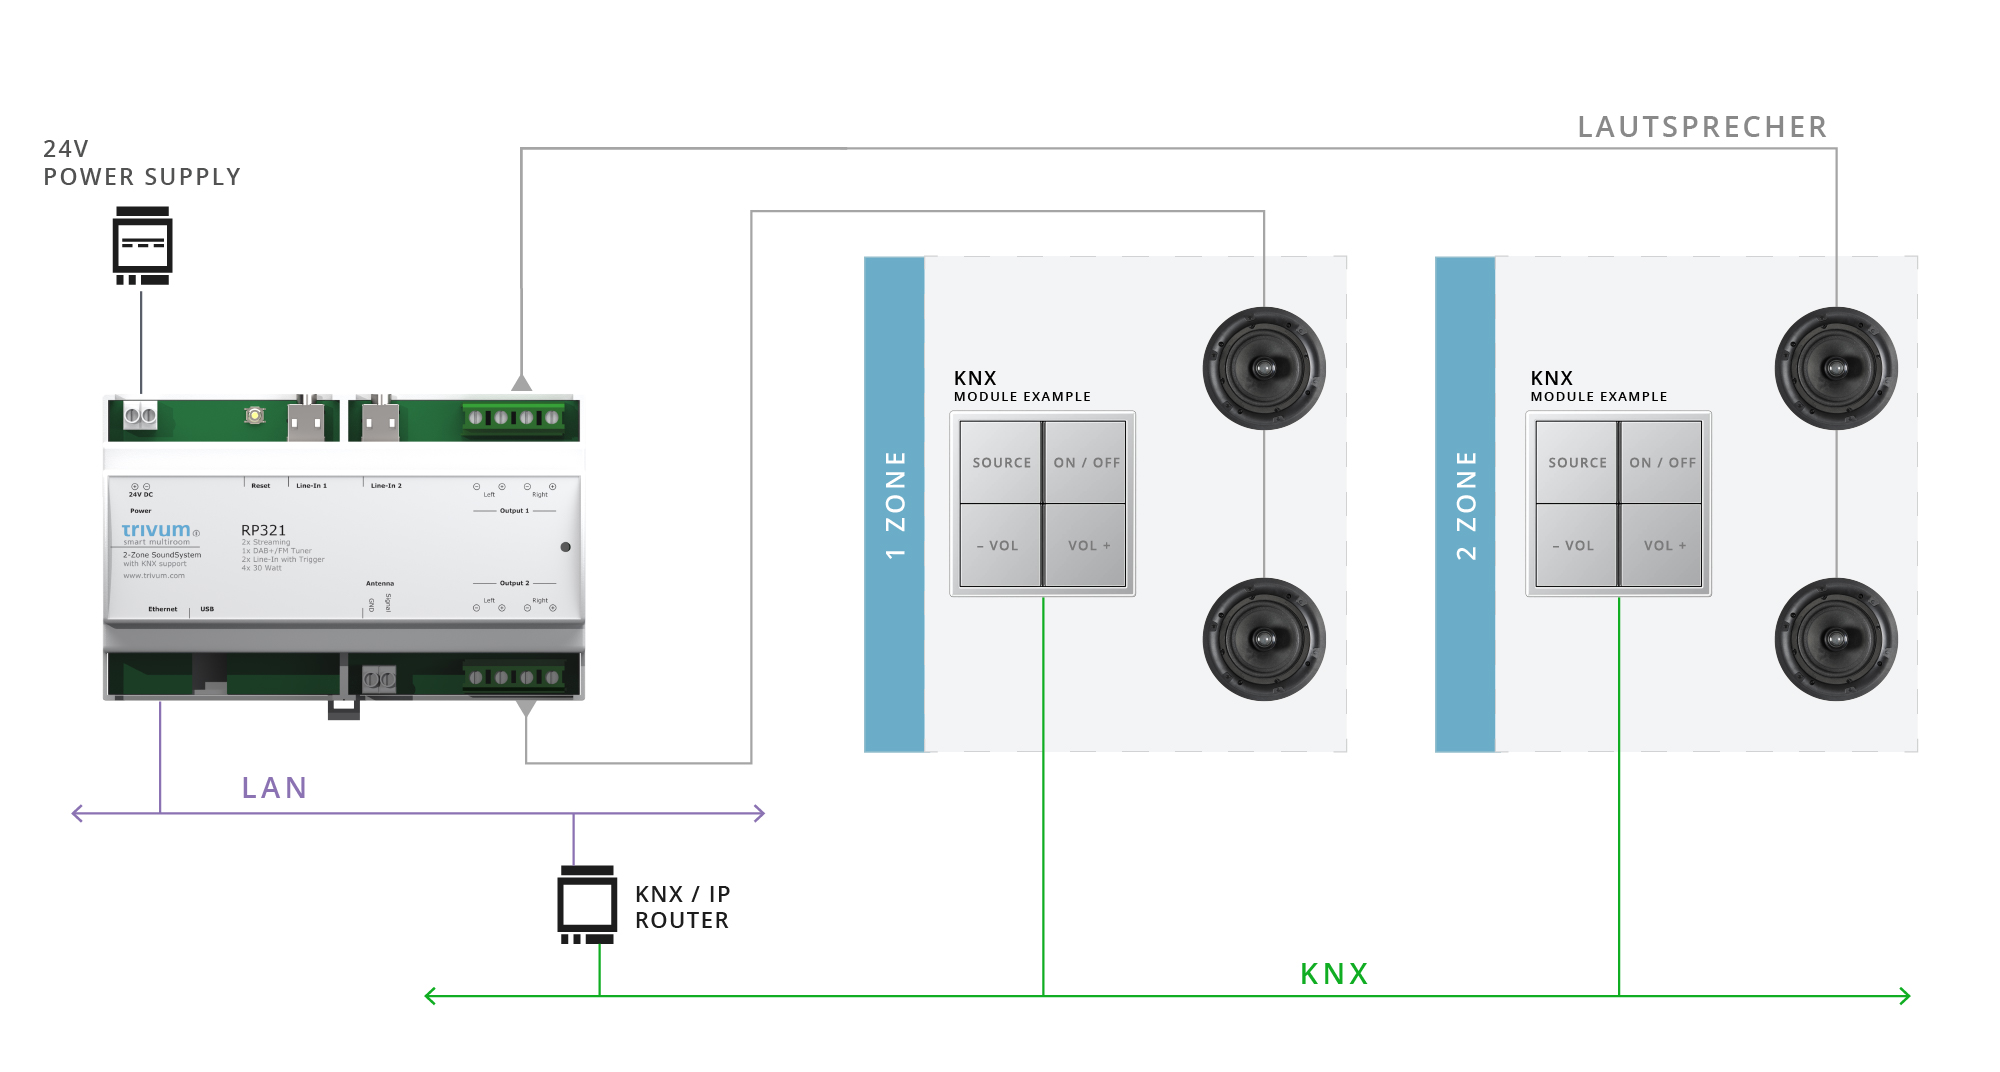 trivum Multiroom System gesteuert von einem KNX-Controller/Display